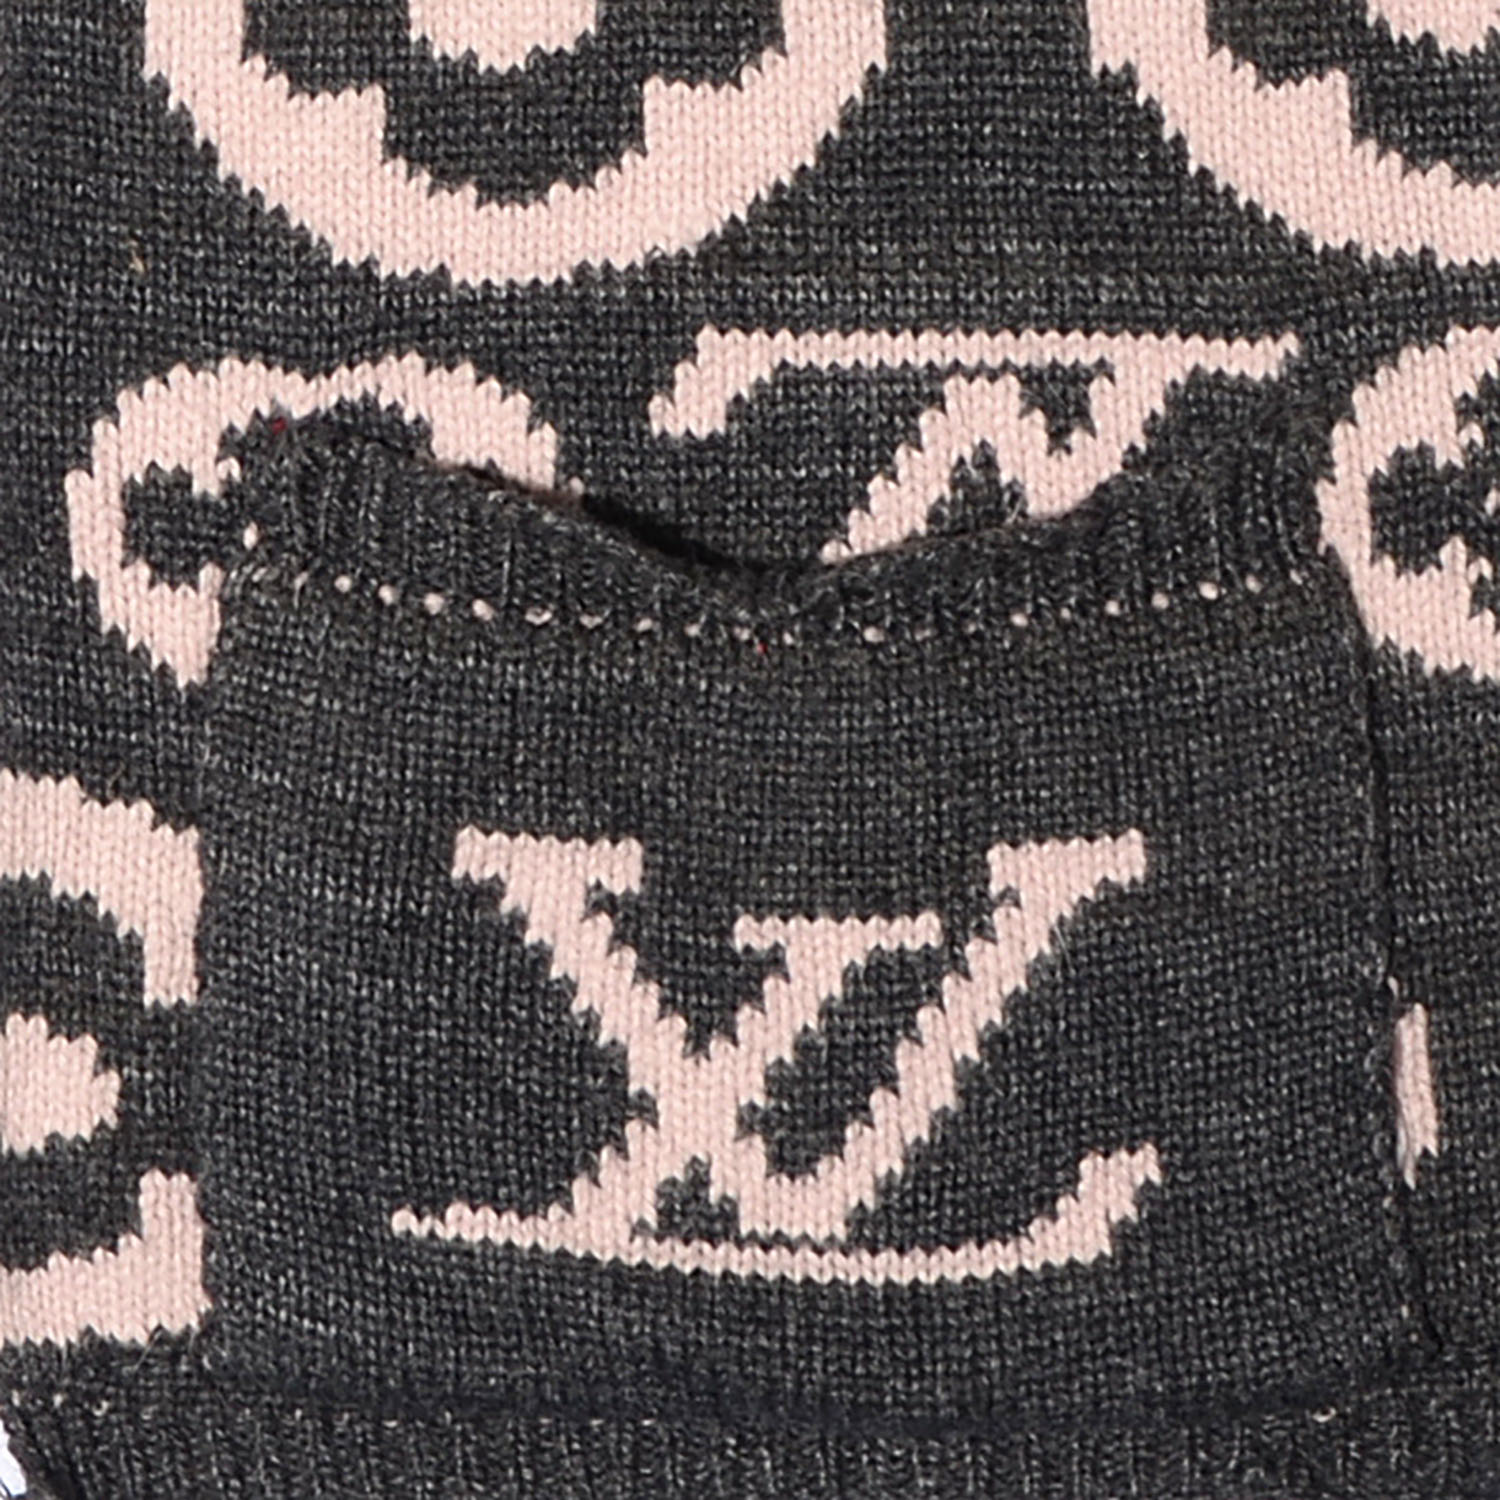 LOUIS VUITTON Monogram Knit Wool Hooded Scarf Pink Grey 76180